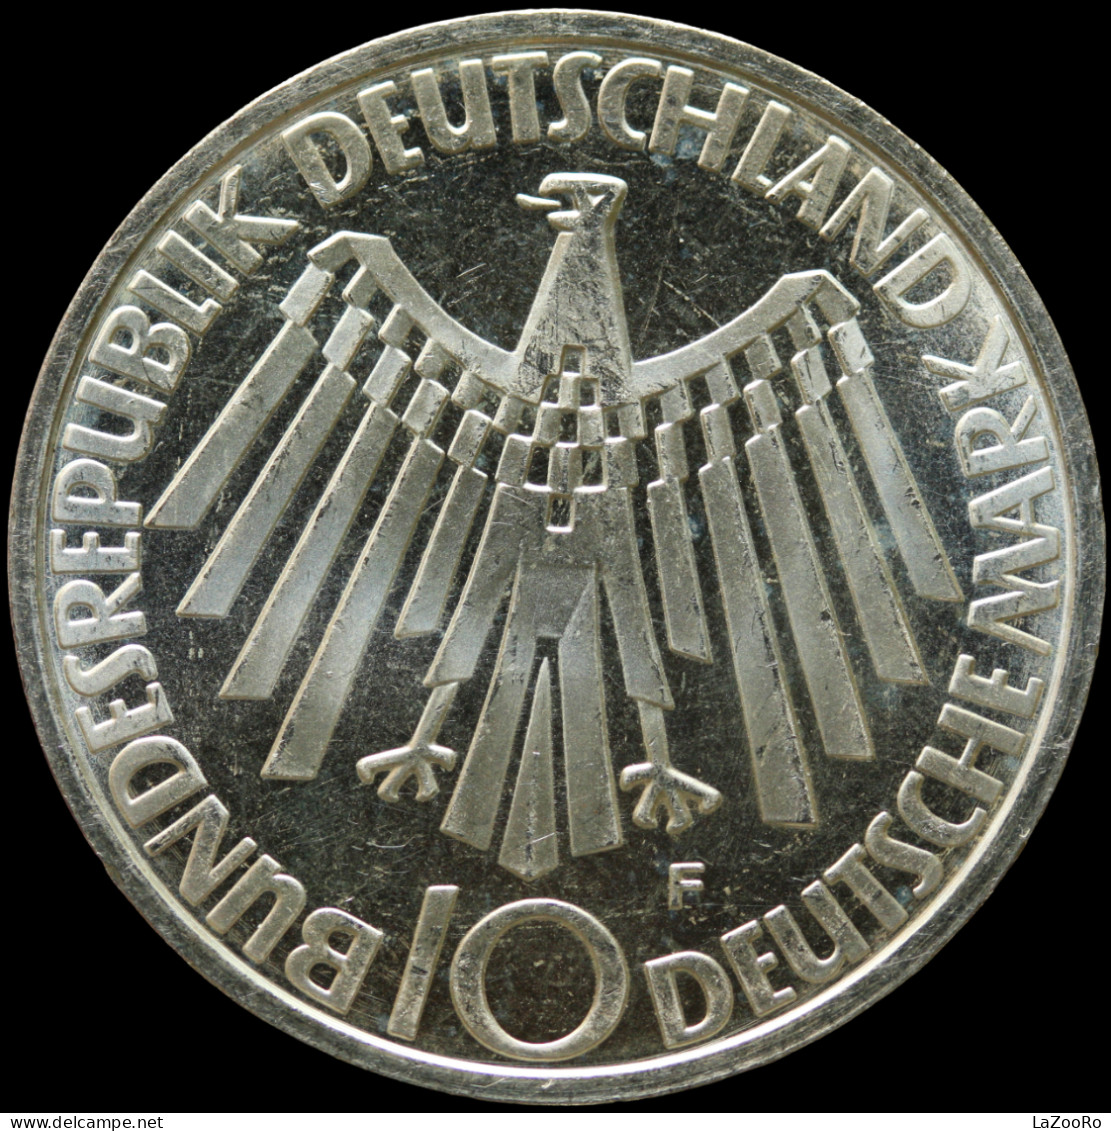 LaZooRo: Germany 10 Mark 1972 F PROOF Olympics - Silver - Commemorative